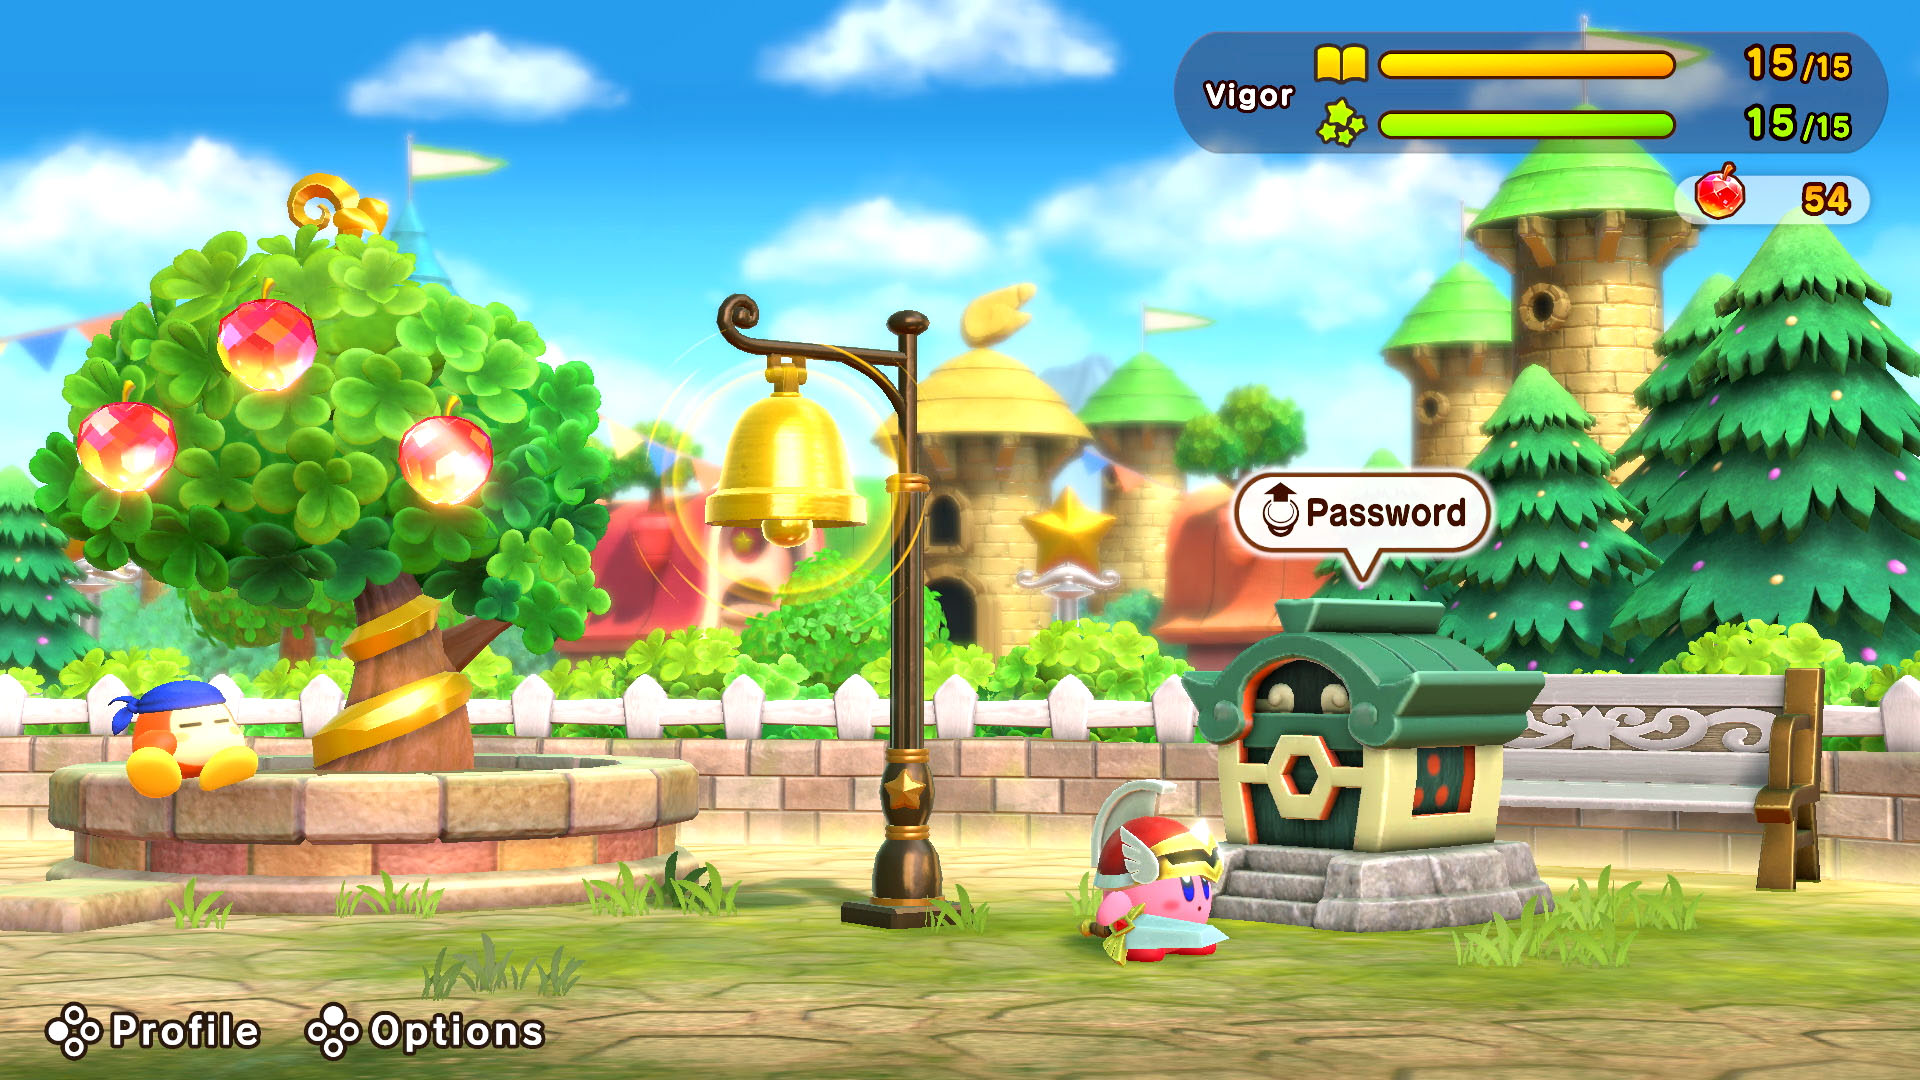 Super Kirby Clash, jogo gratuito para começar, é anunciado e já está  disponível no Switch [Atualizado]